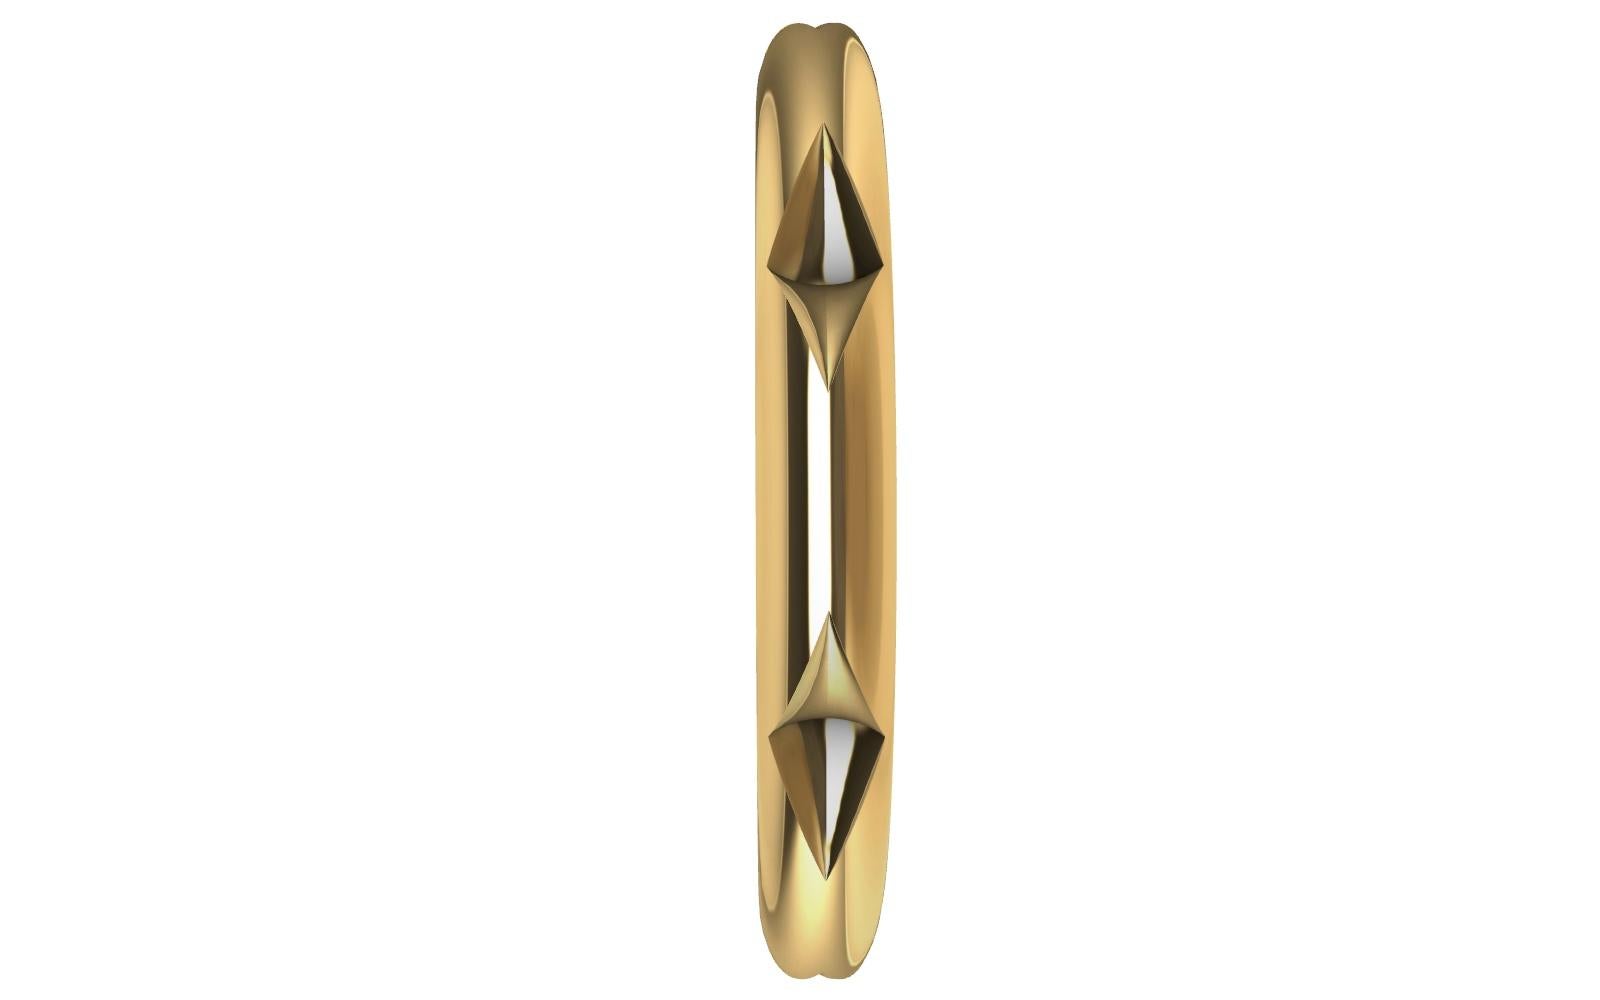 bracelet 7 losanges en or jaune 14 carats, le designer de Tiffany, Thomas Kurilla a redessiné ce bracelet, même design plus étroit  rhombus plus rapide  et  empilable. C'est ma forme préférée pour créer.
Le chiffre sept, considéré comme le chiffre